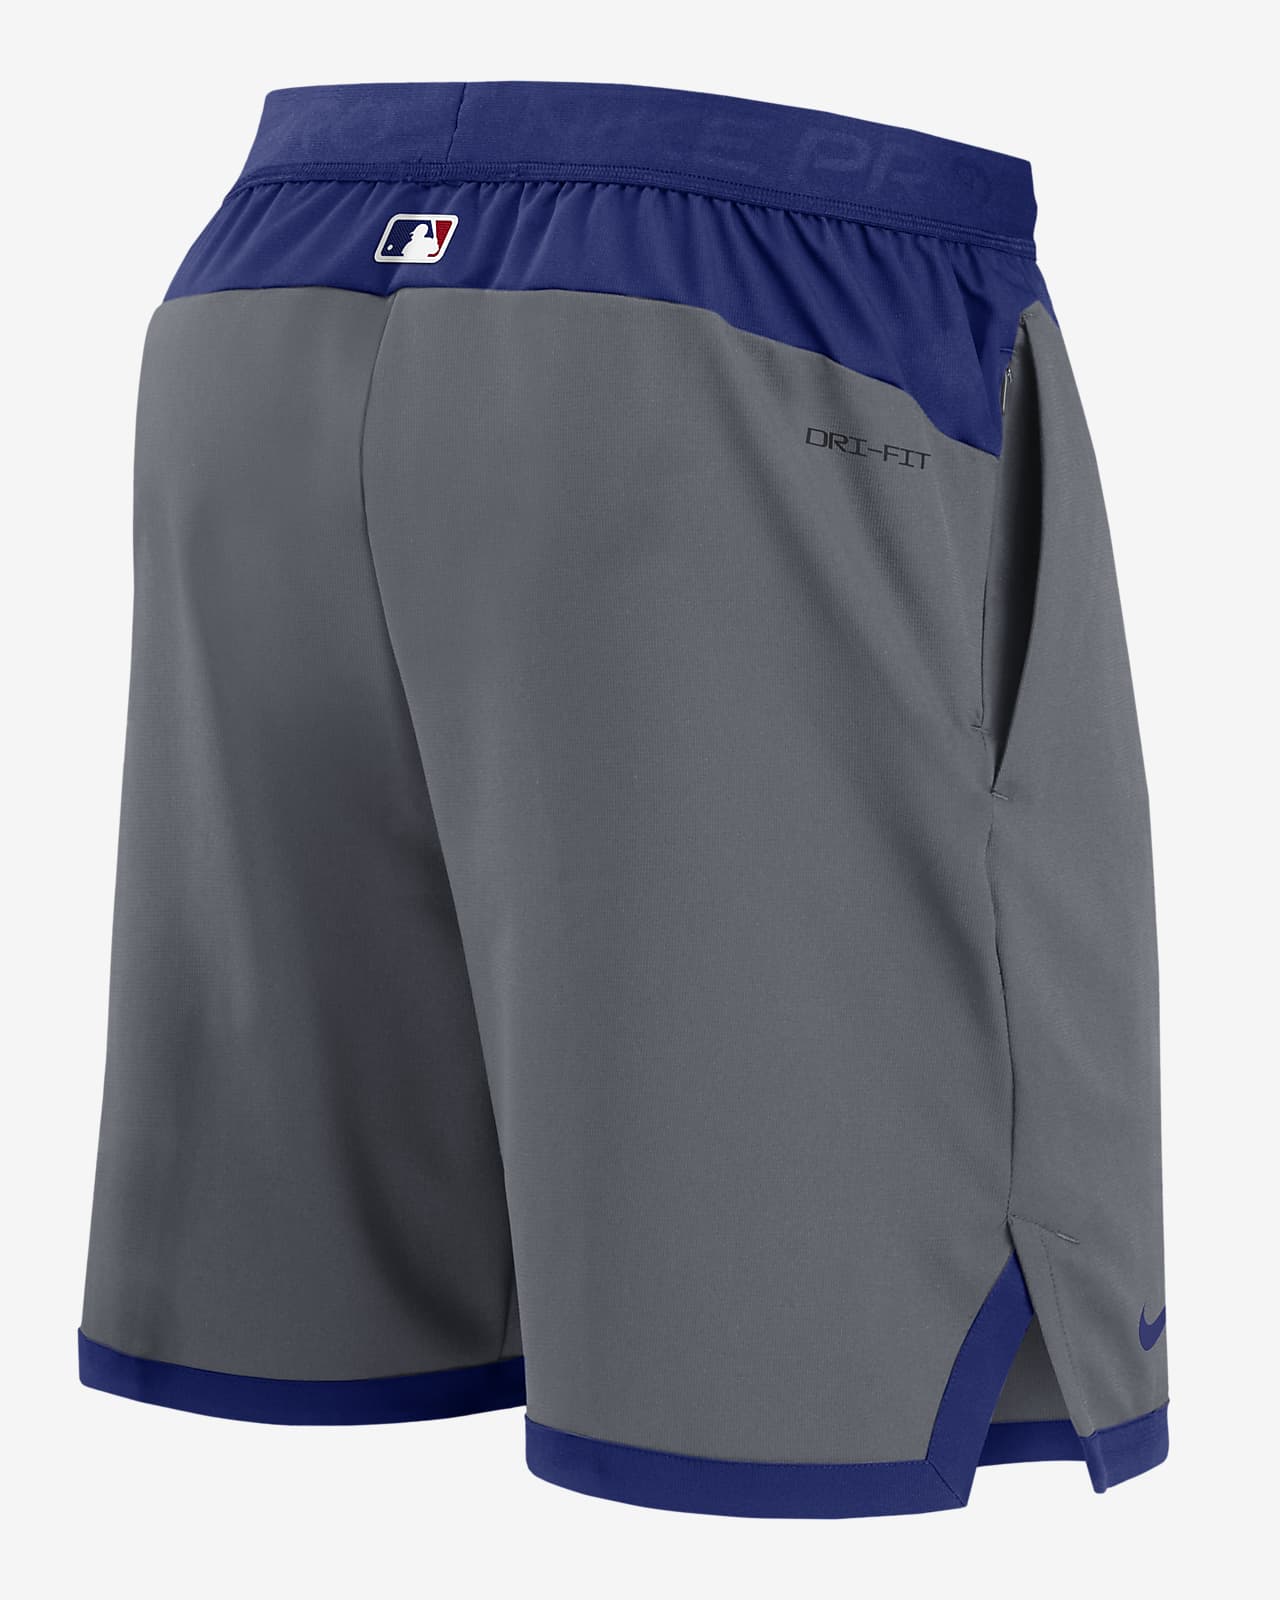 Nike, Shirts, Nike Texas Rangers Dry Fit